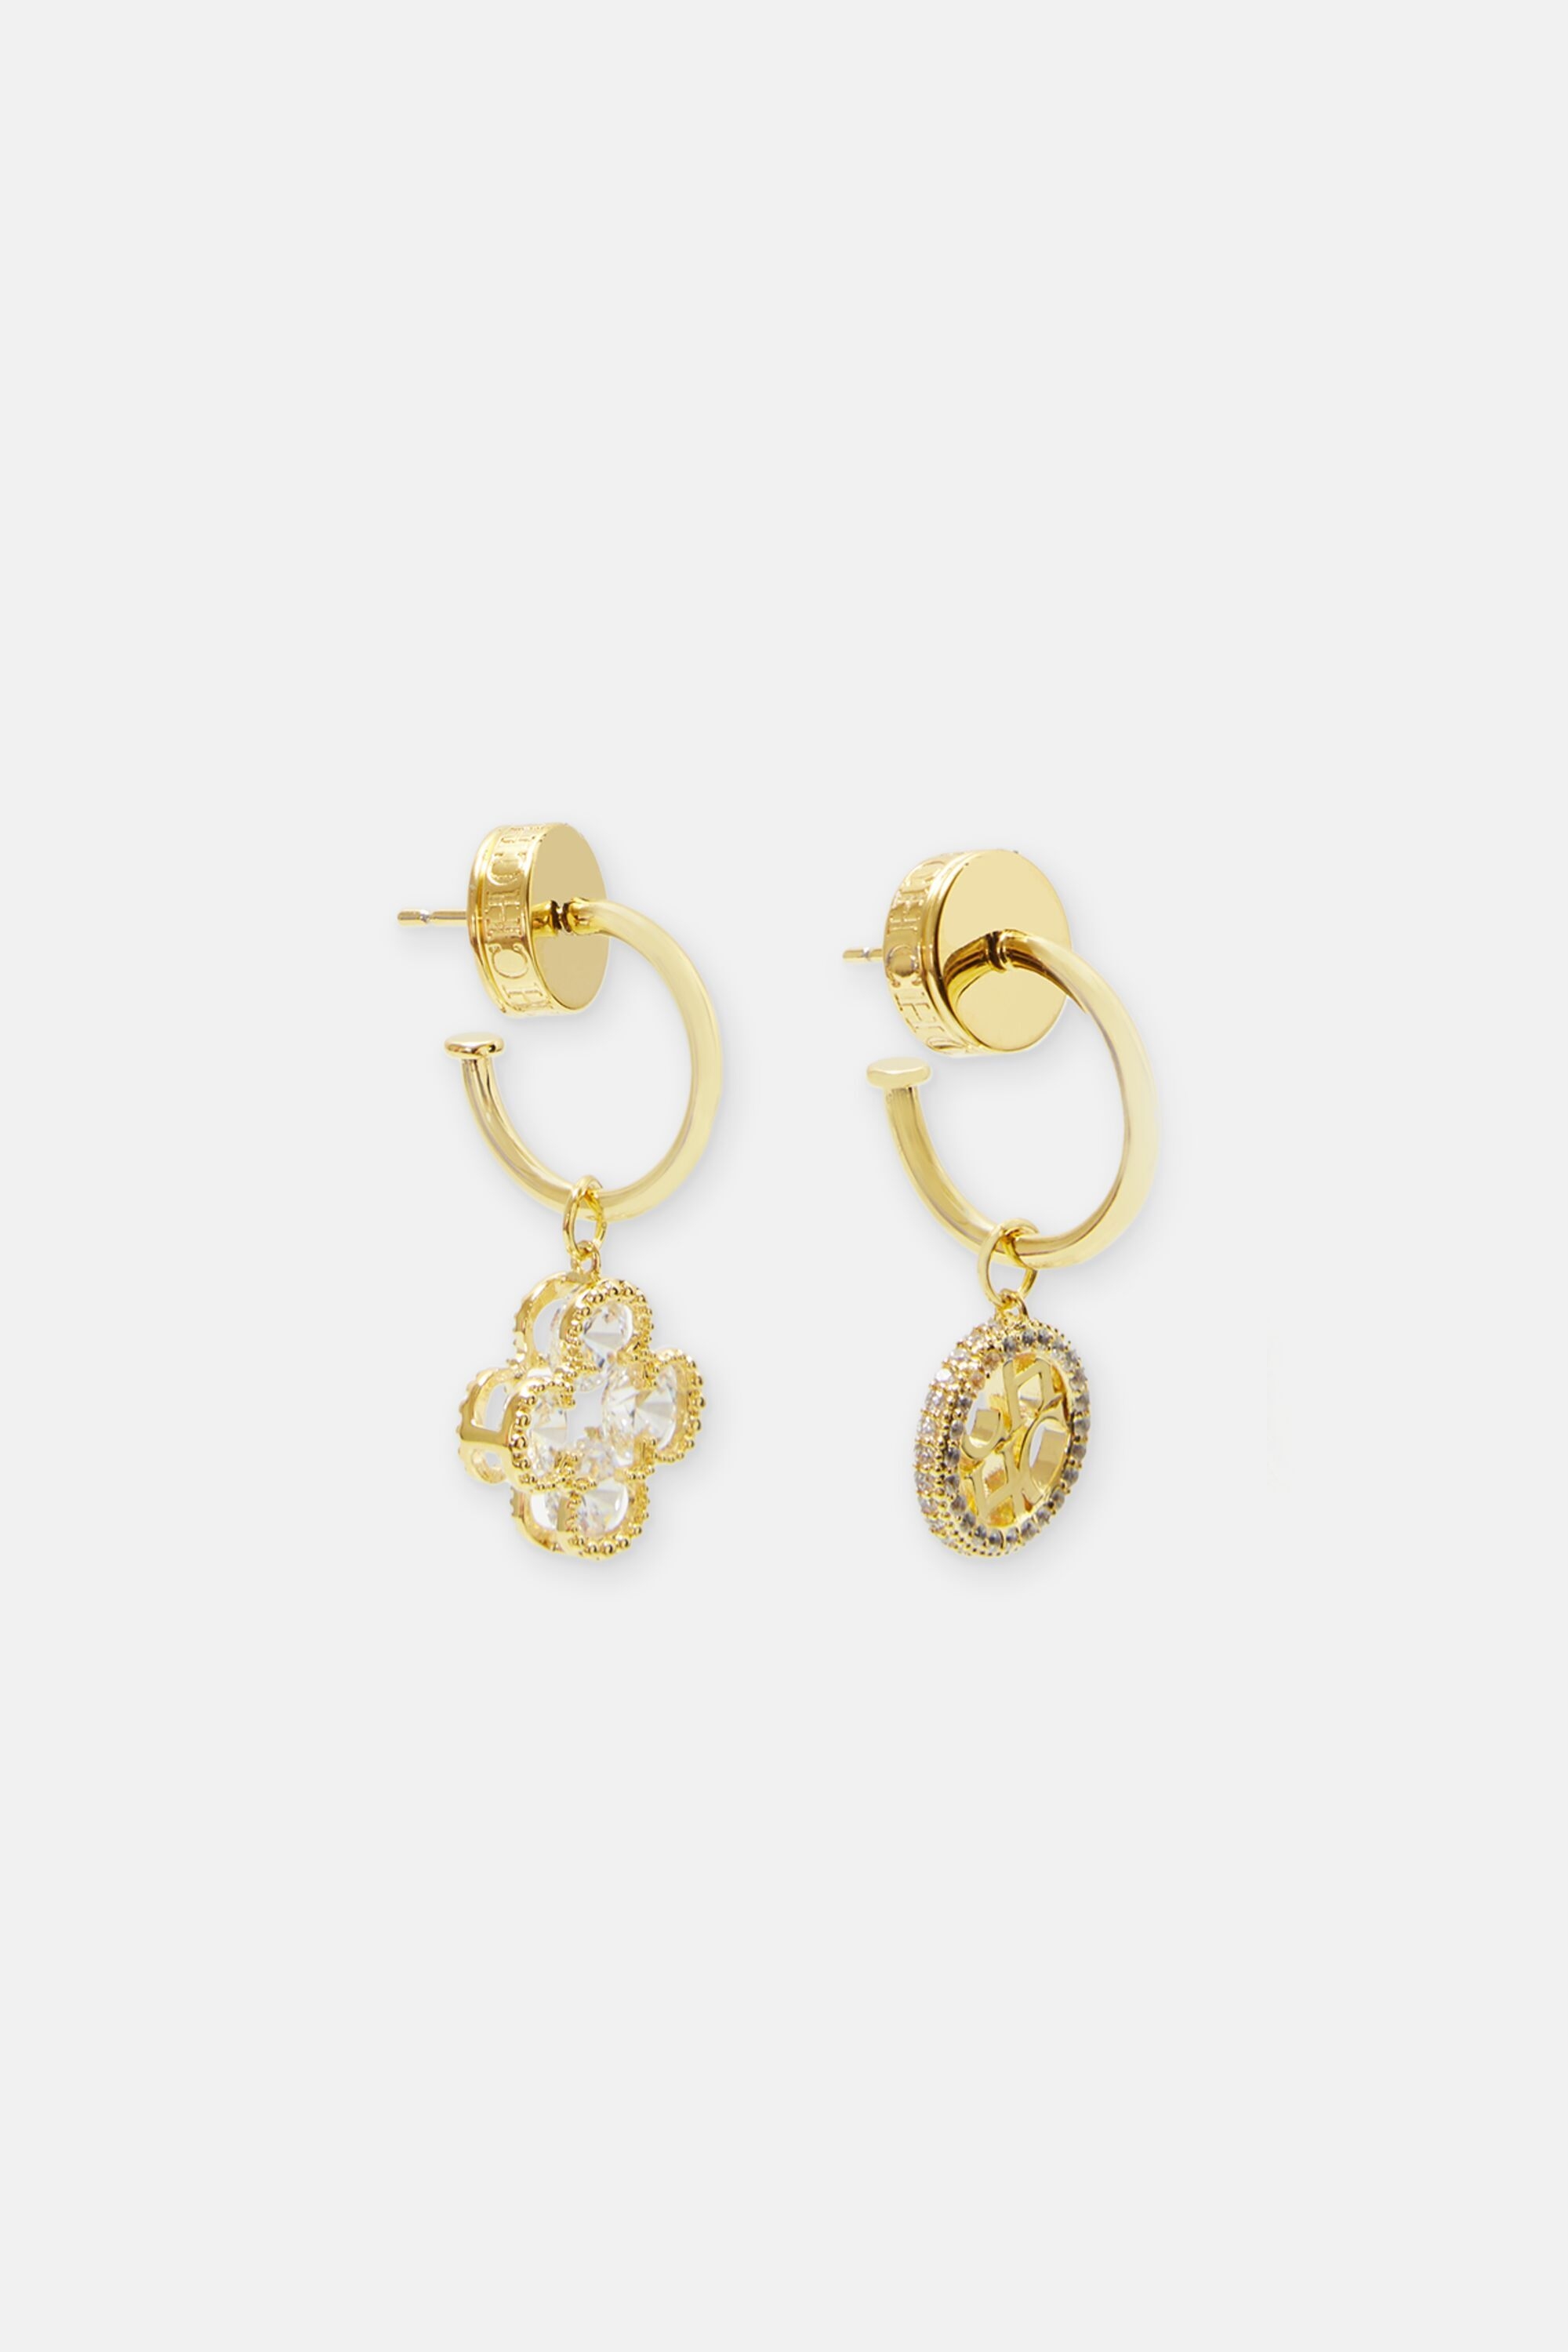 Rosetta Insignia Diamond earrings